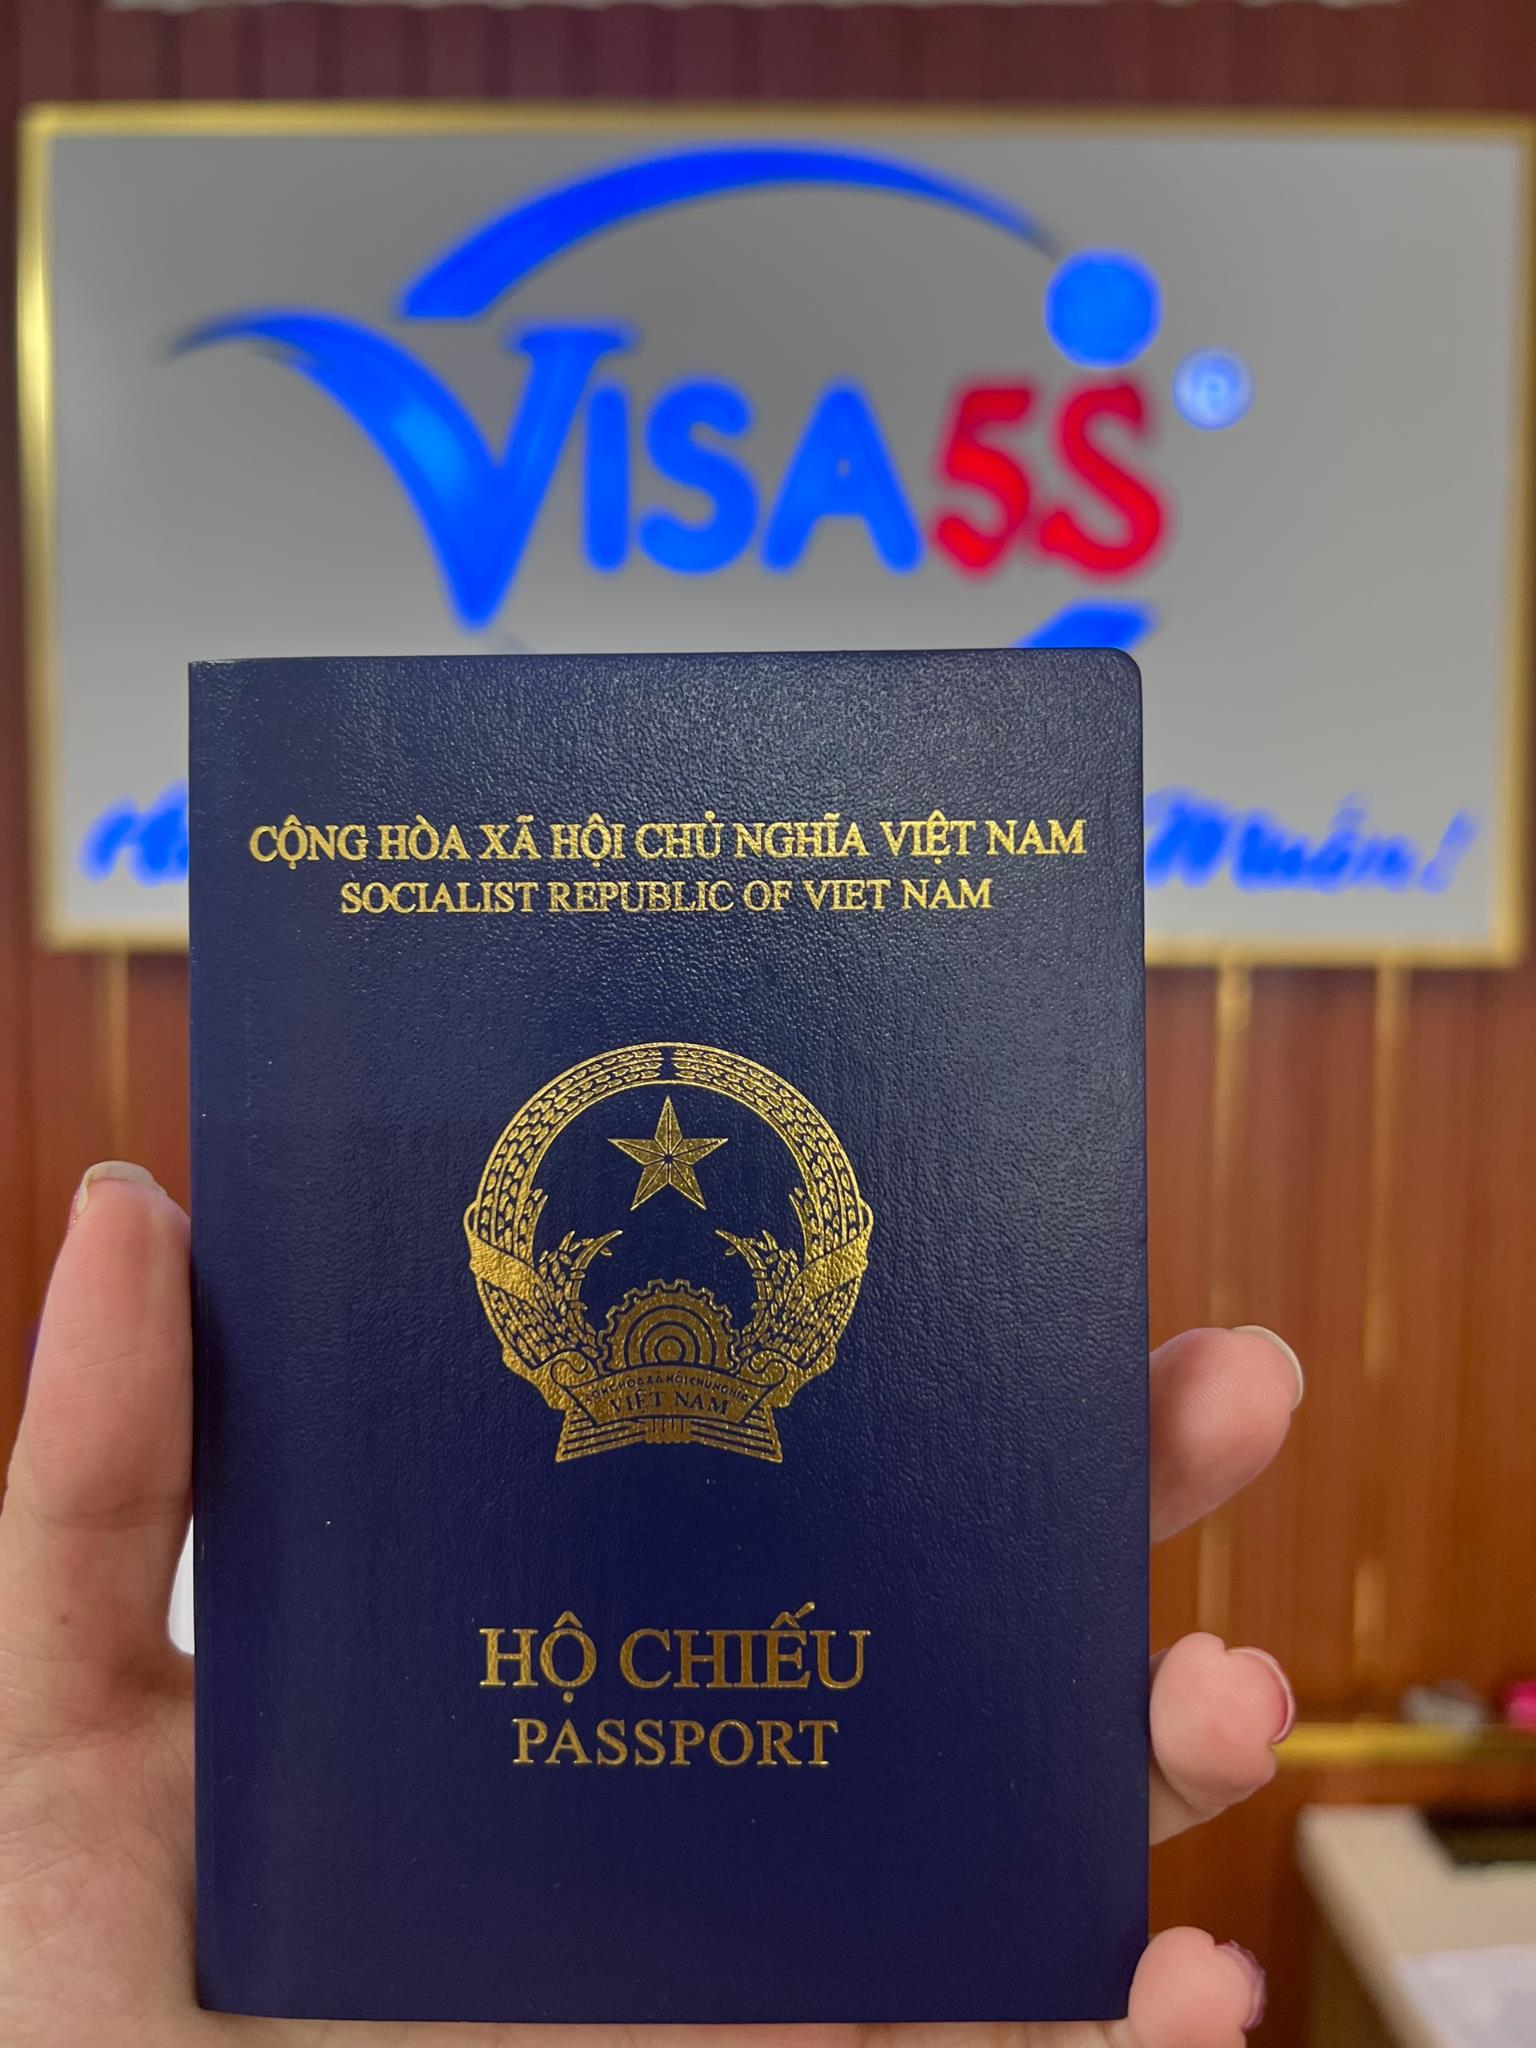 Bạn đang lên kế hoạch xin Visa Hàn Quốc để đi du lịch tháng 08/2022? Hãy cùng xem hình ảnh liên quan đến Visa Hàn Quốc, chúng tôi sẽ giải đáp mọi thắc mắc của bạn, đưa ra những thay đổi mới nhất trong quy trình xin Visa Hàn Quốc.